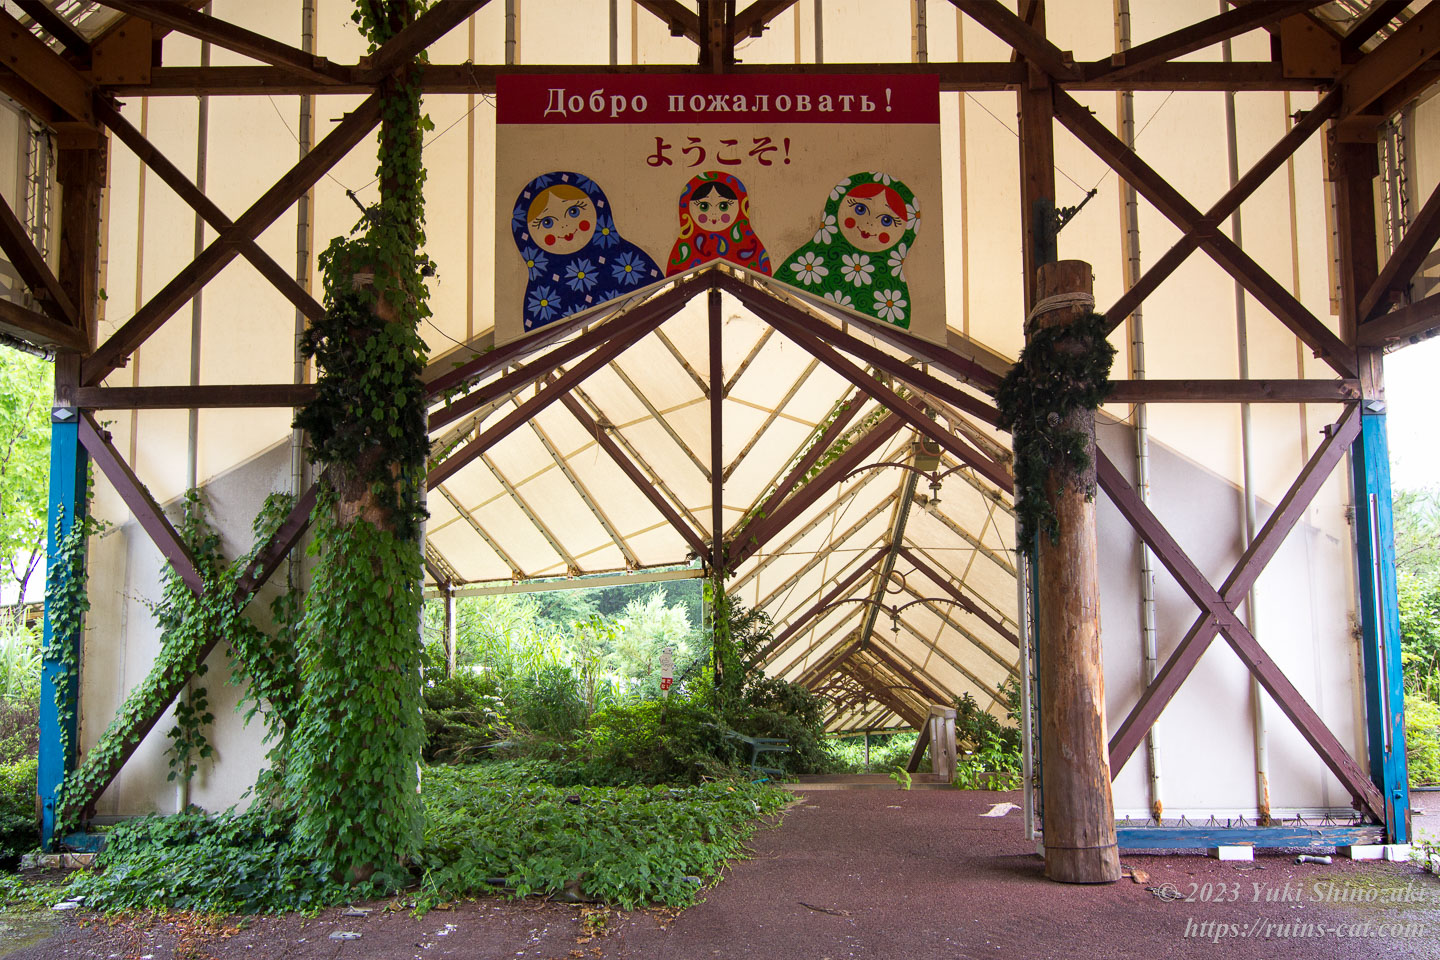 テント内の看板には3個のマトリョーシカ人形が描かれ、その上には「ようこそ！」と日本語とロシア語で書かれている。